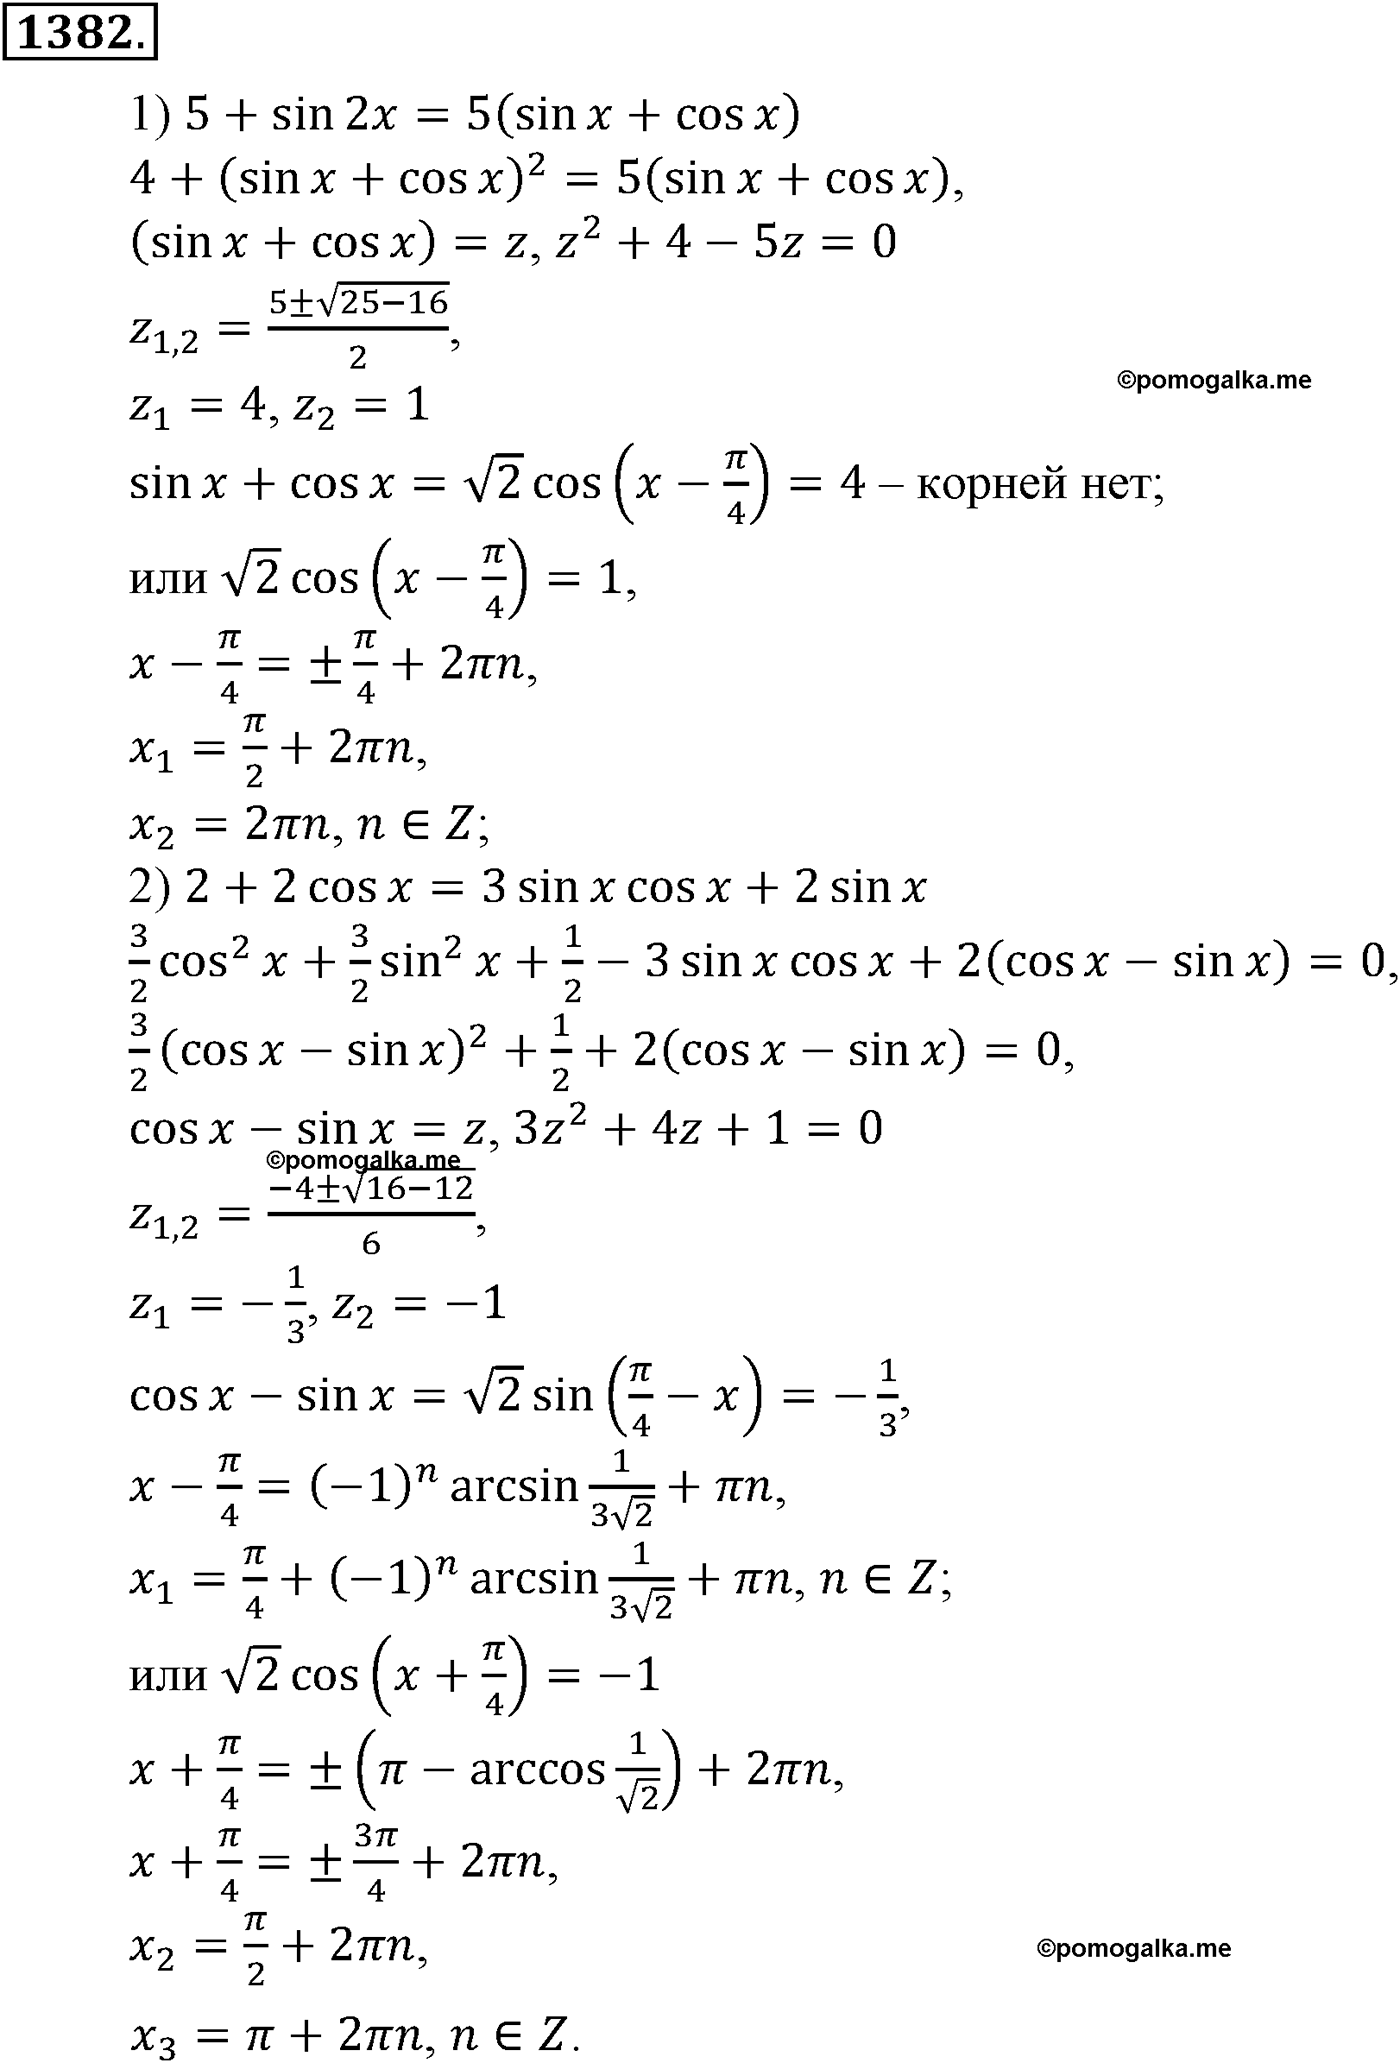 разбор задачи №1382 по алгебре за 10-11 класс из учебника Алимова, Колягина